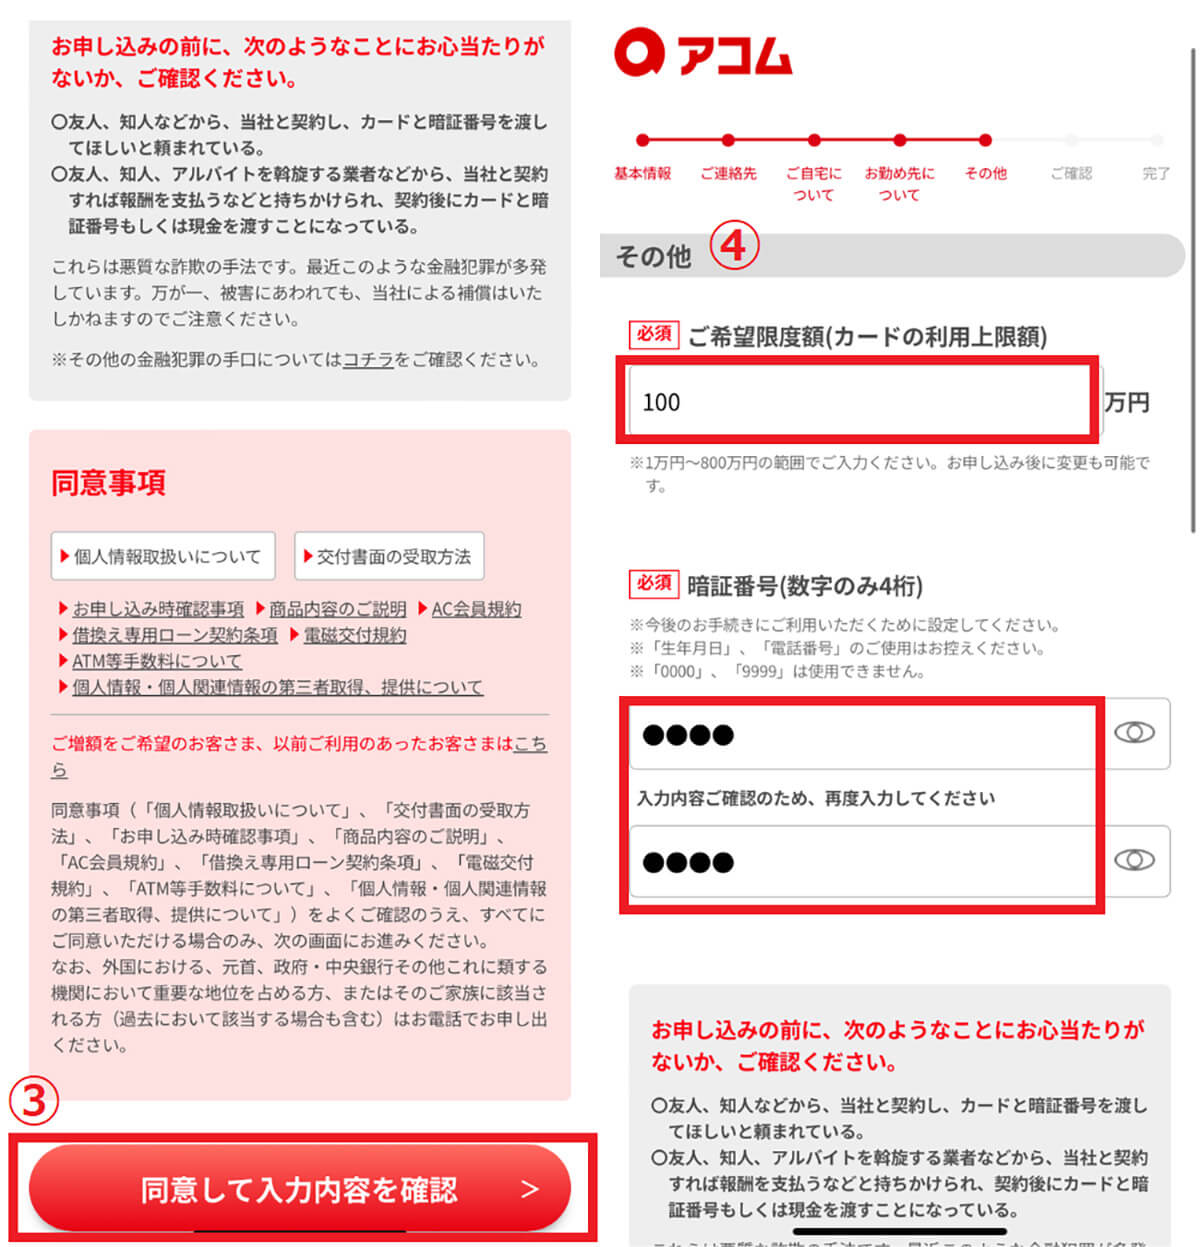 【詳細】アコムACマスターカードの審査基準と申し込み方法②